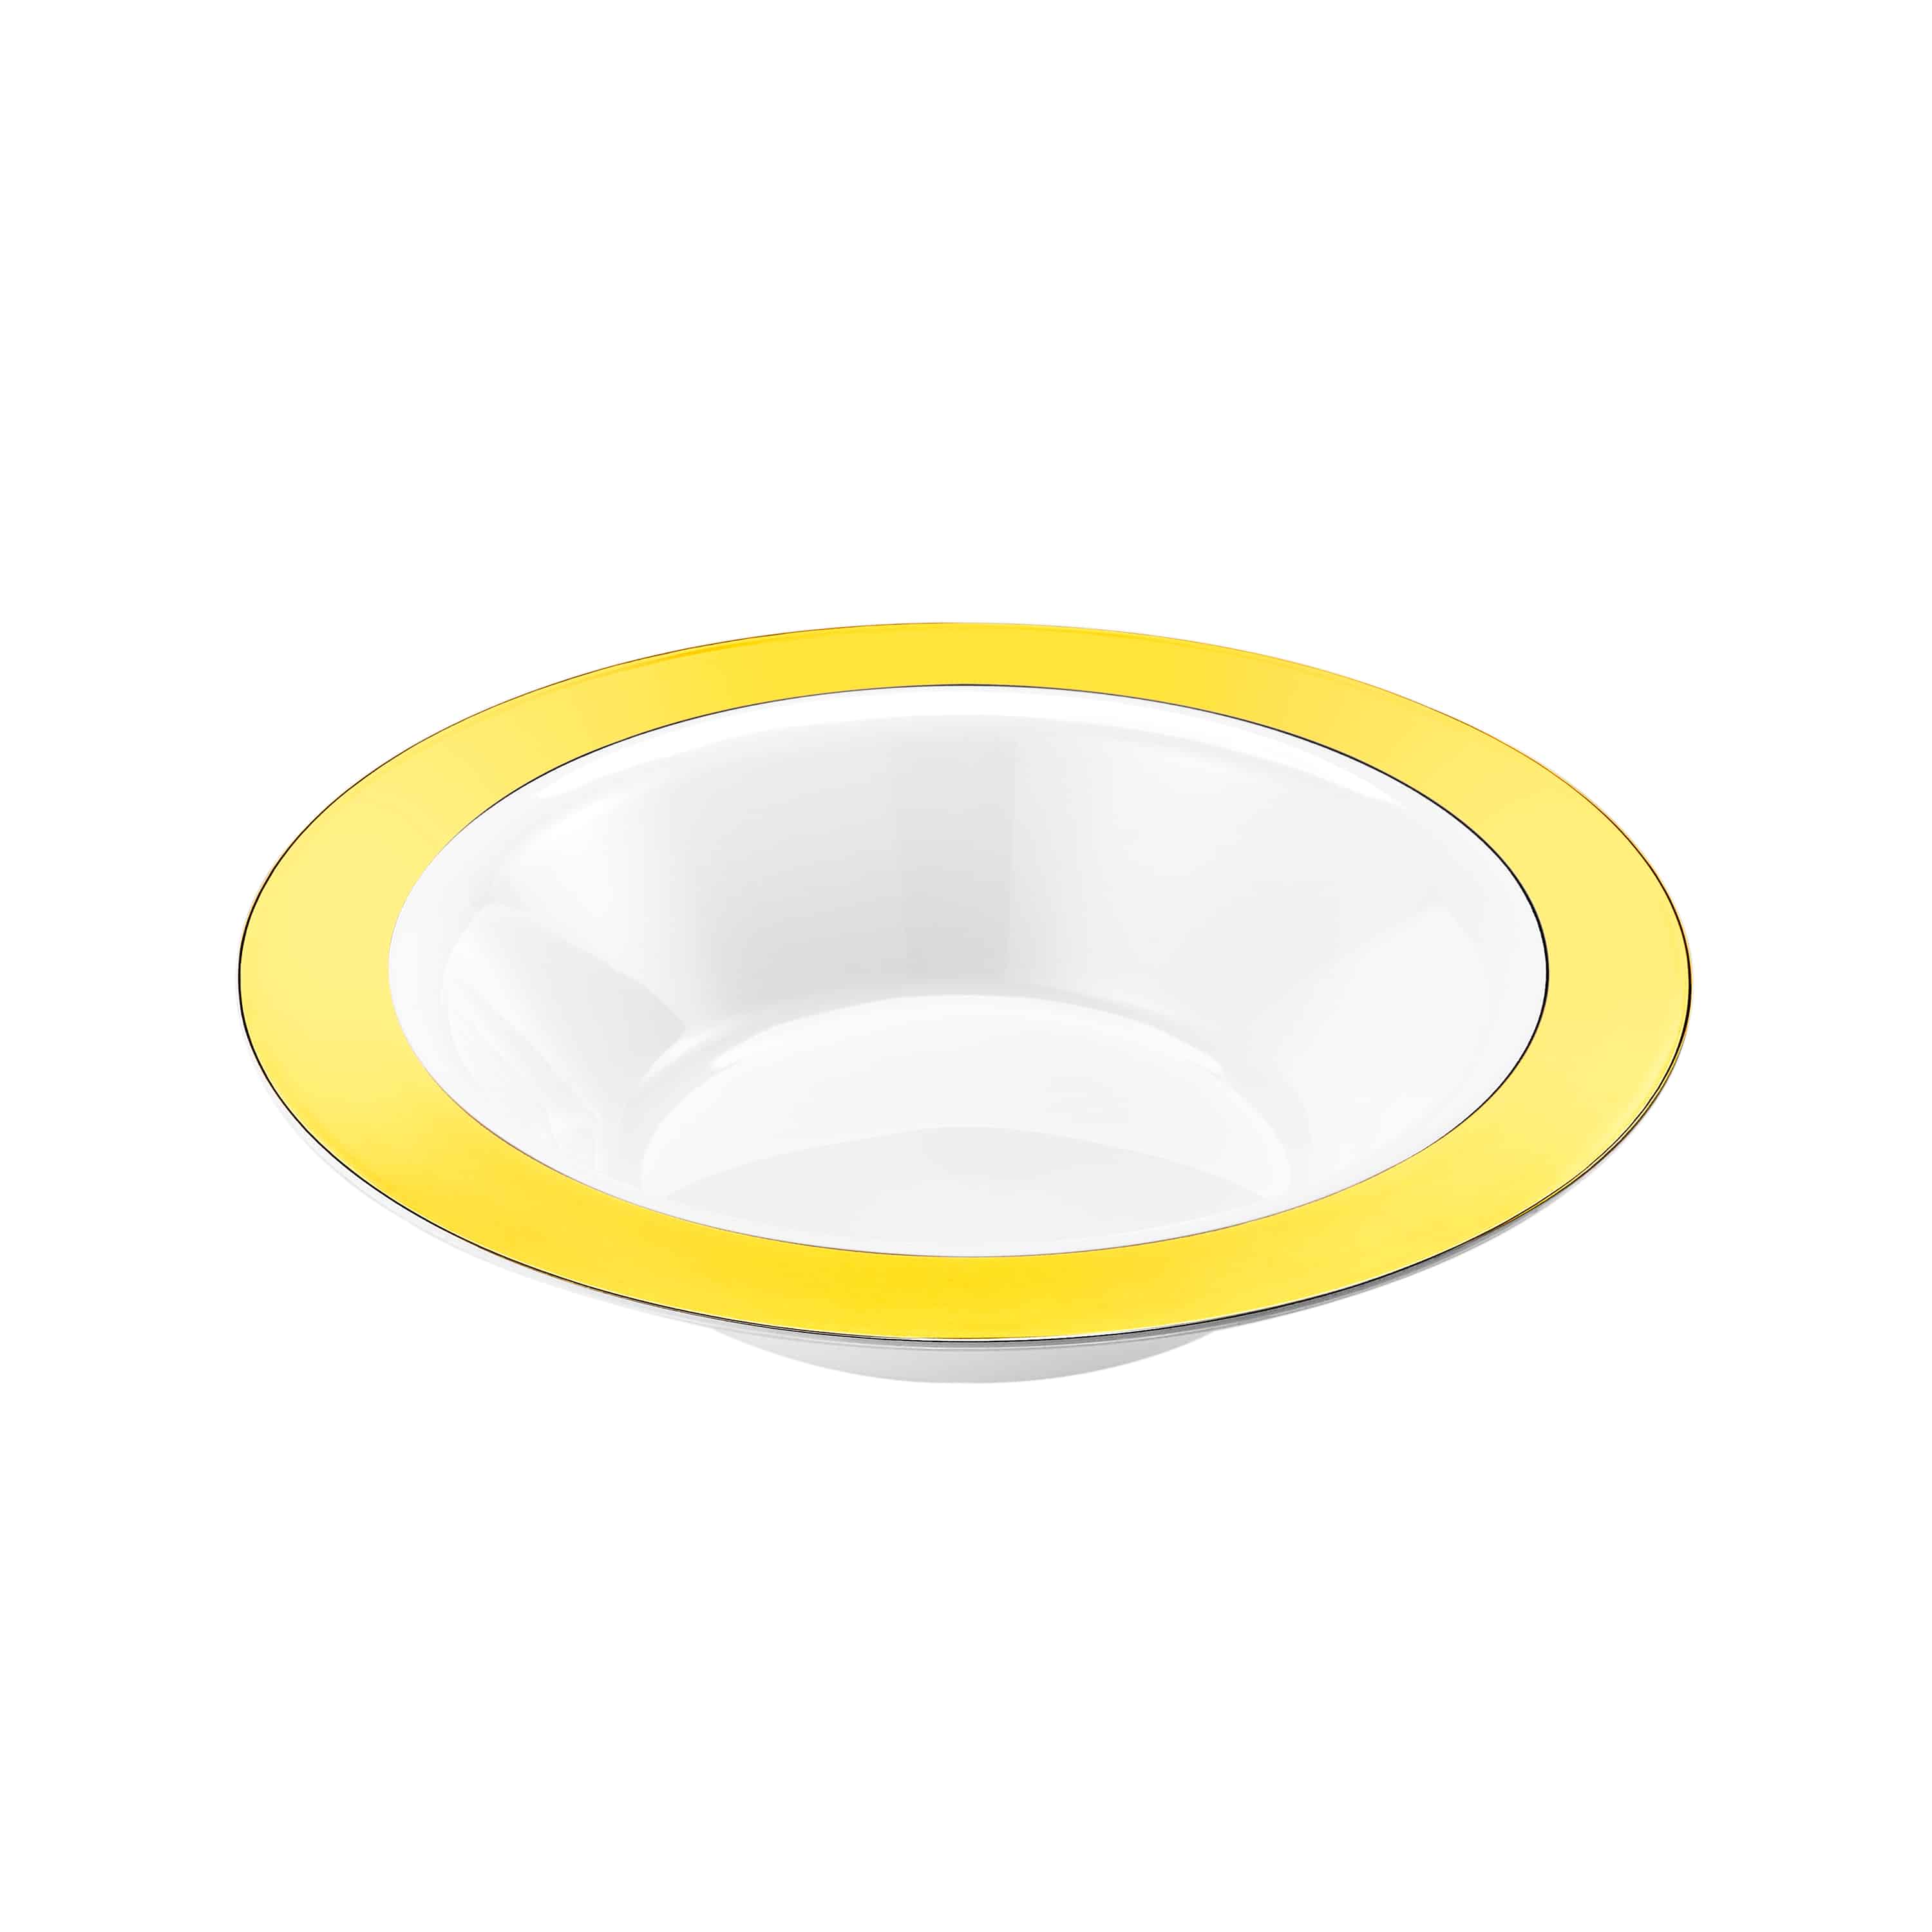 Magnificence Gold Rim Premium Plastic Round Dinnerware